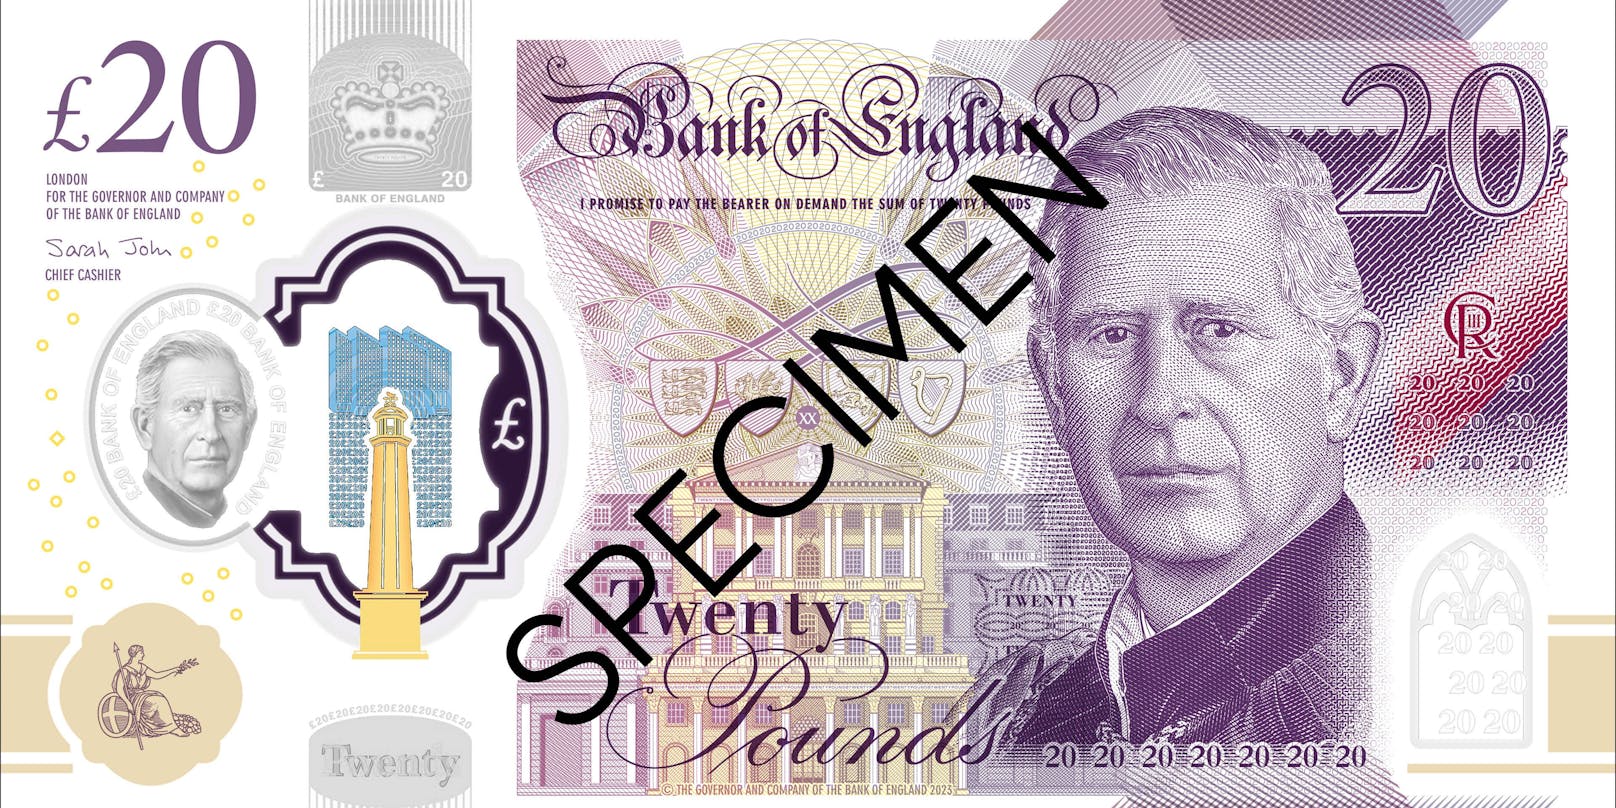 Großbritannien, Bank of England präsentiert Banknoten mit Konterfei von König Charles III.